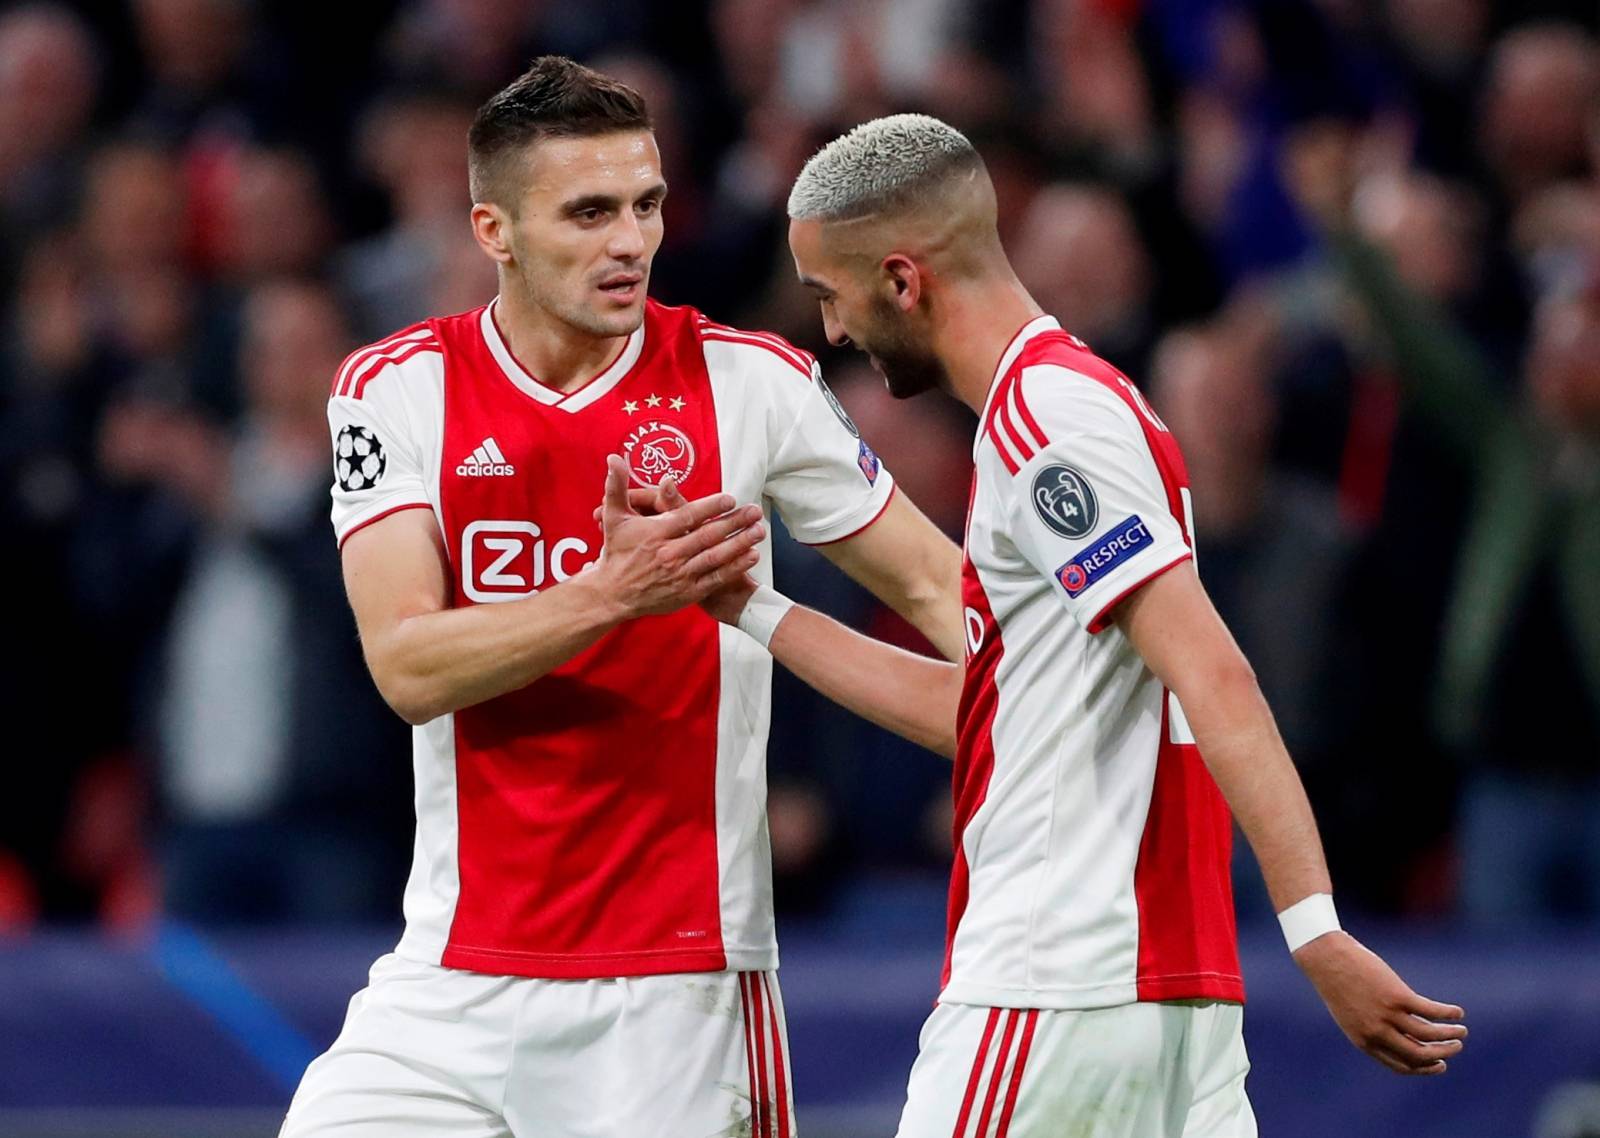 Champions League Semi Final Second Leg - Ajax Amsterdam v Tottenham Hotspur